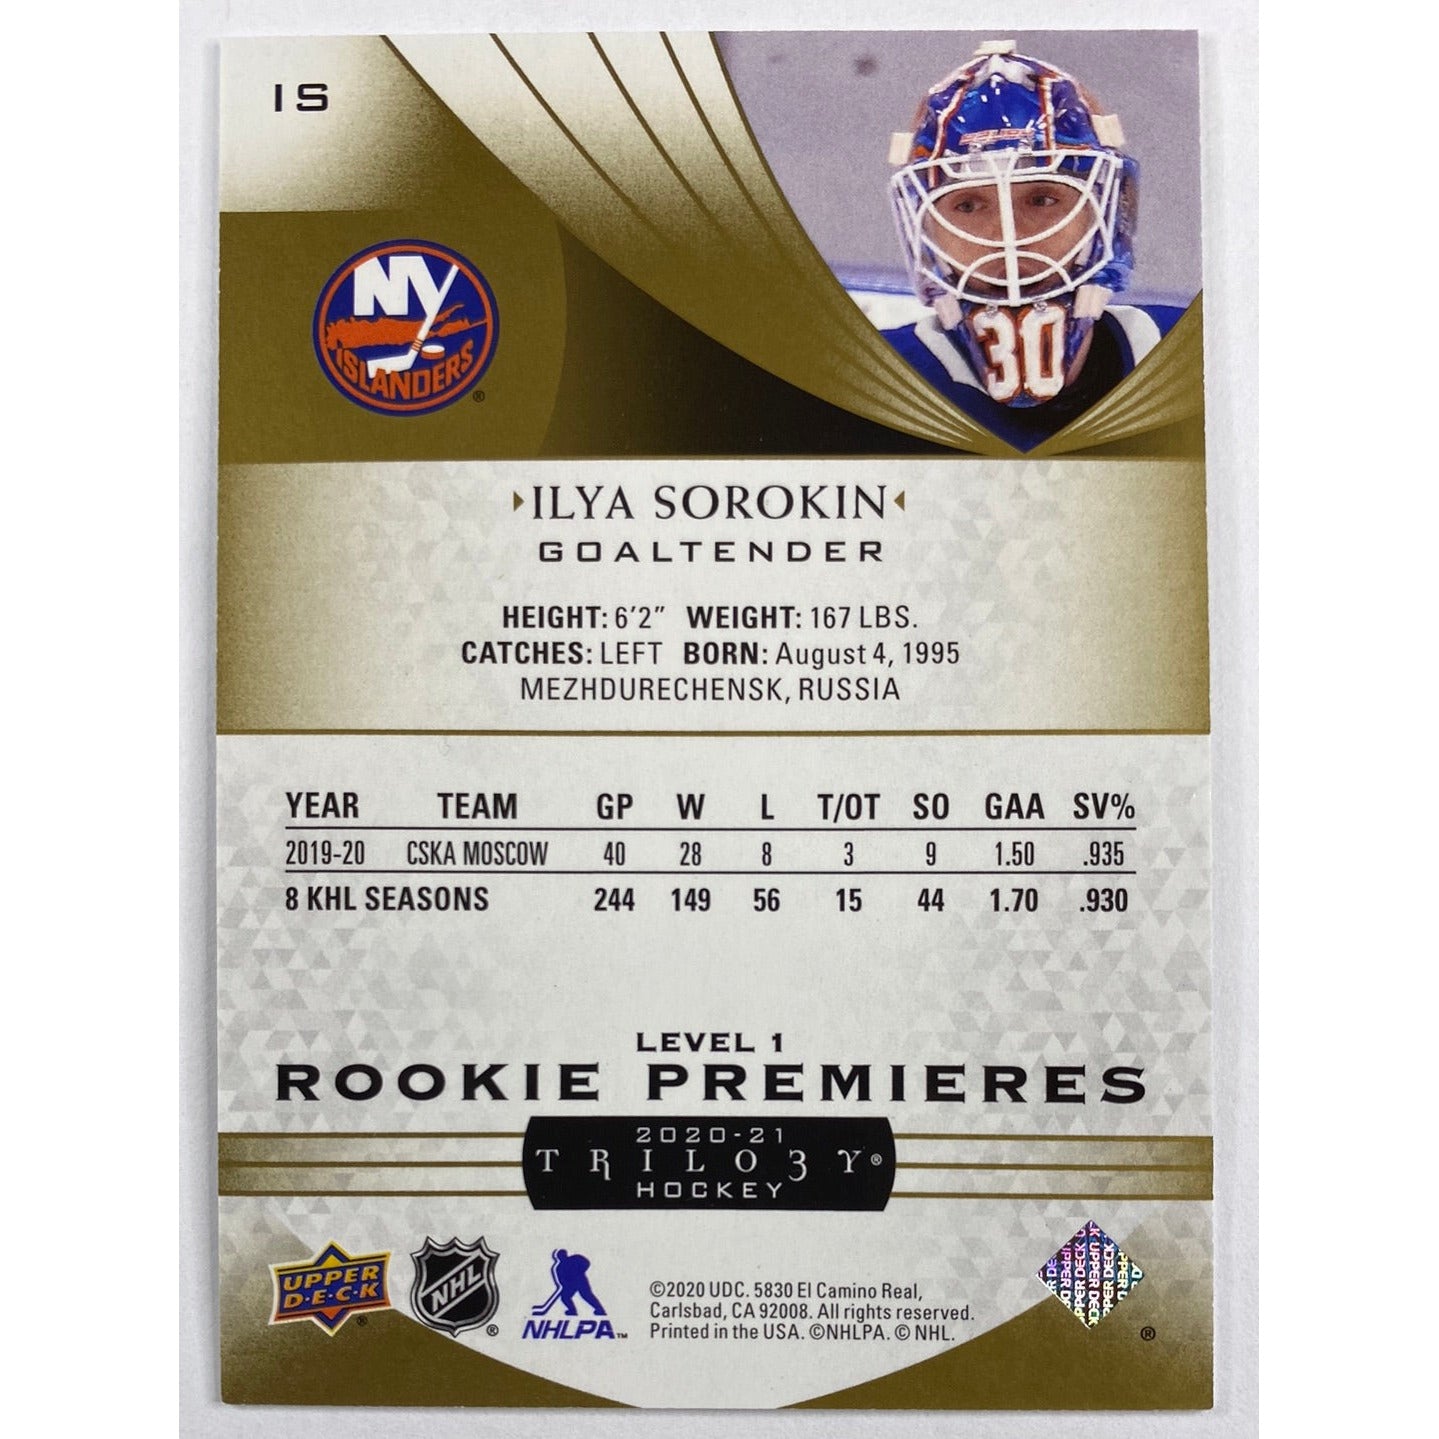 2020-21 Trilogy Ilya Sorokin Level 1 Rookie Premiers /499